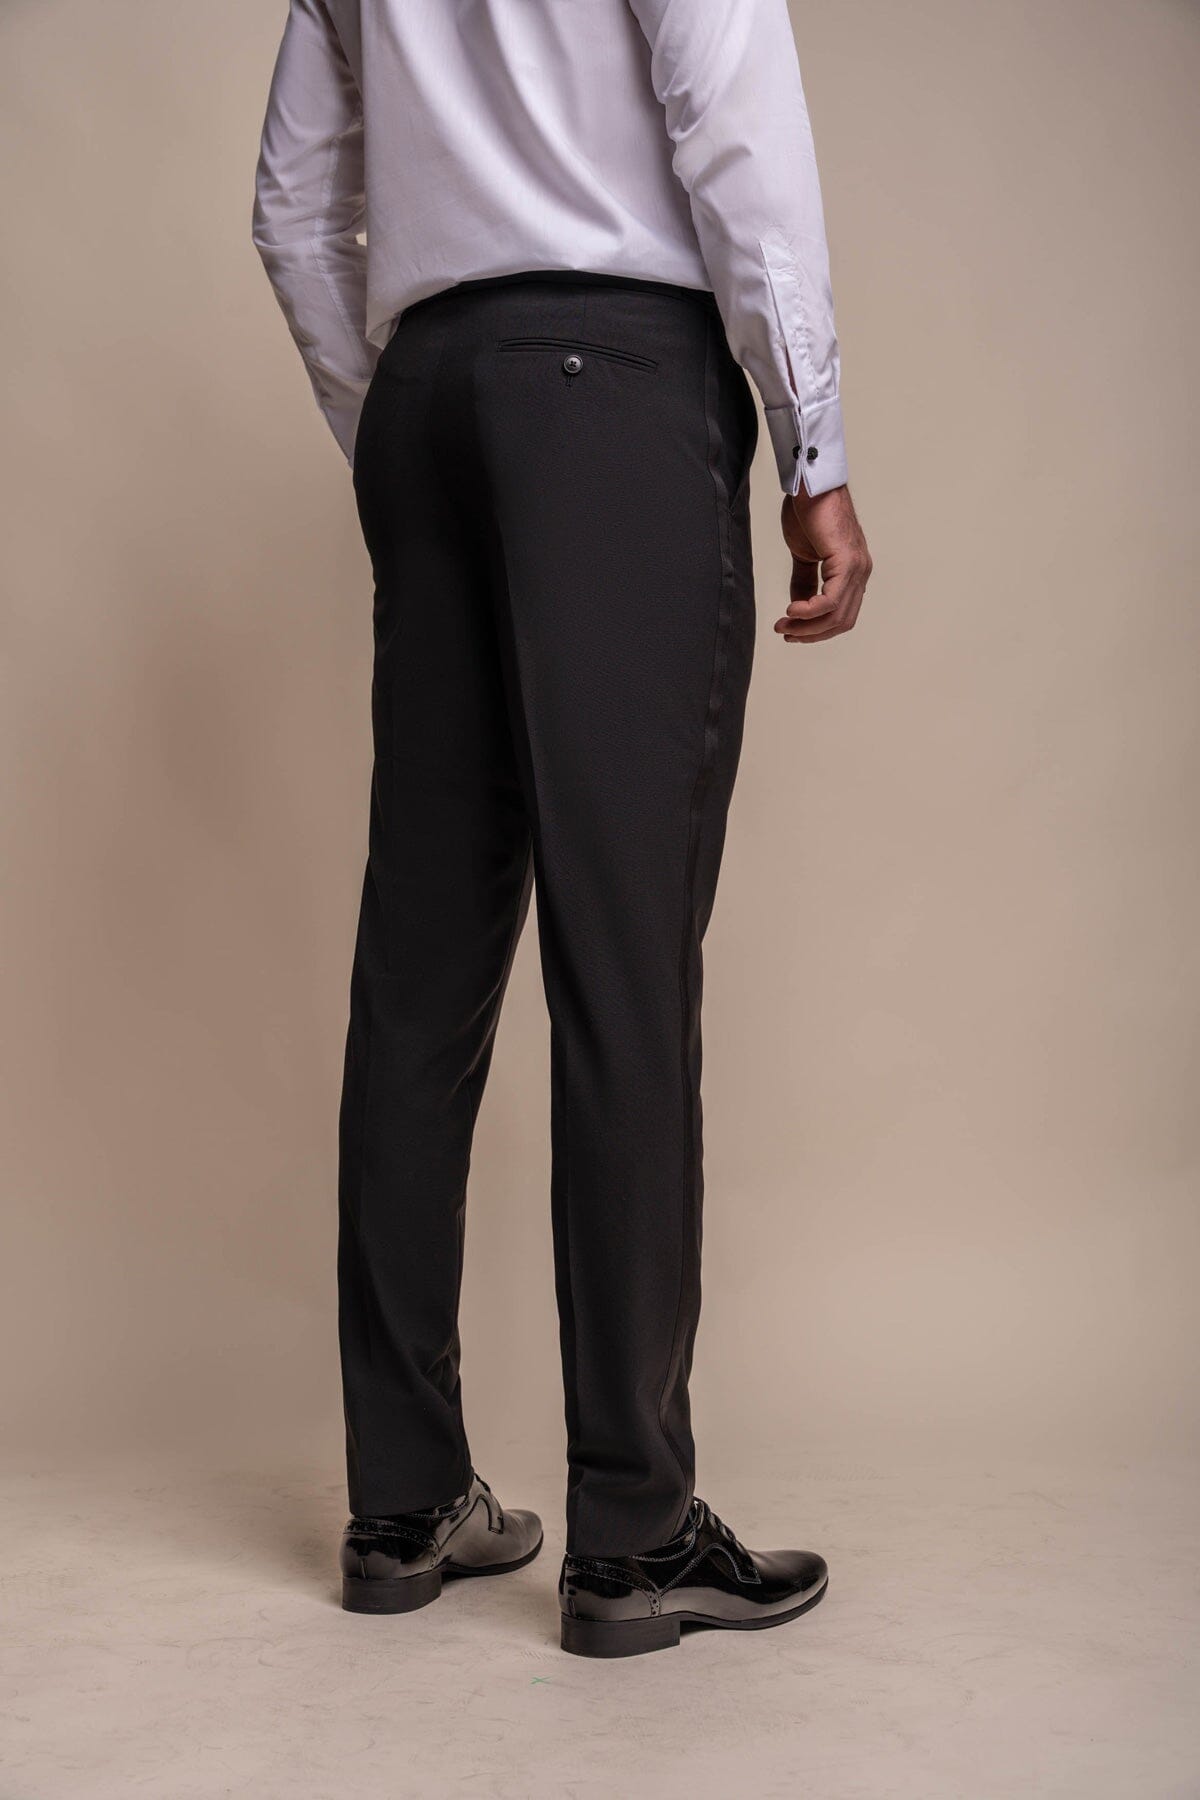 Aspen Black Tuxedo 2 Piece Suit - Suits - 